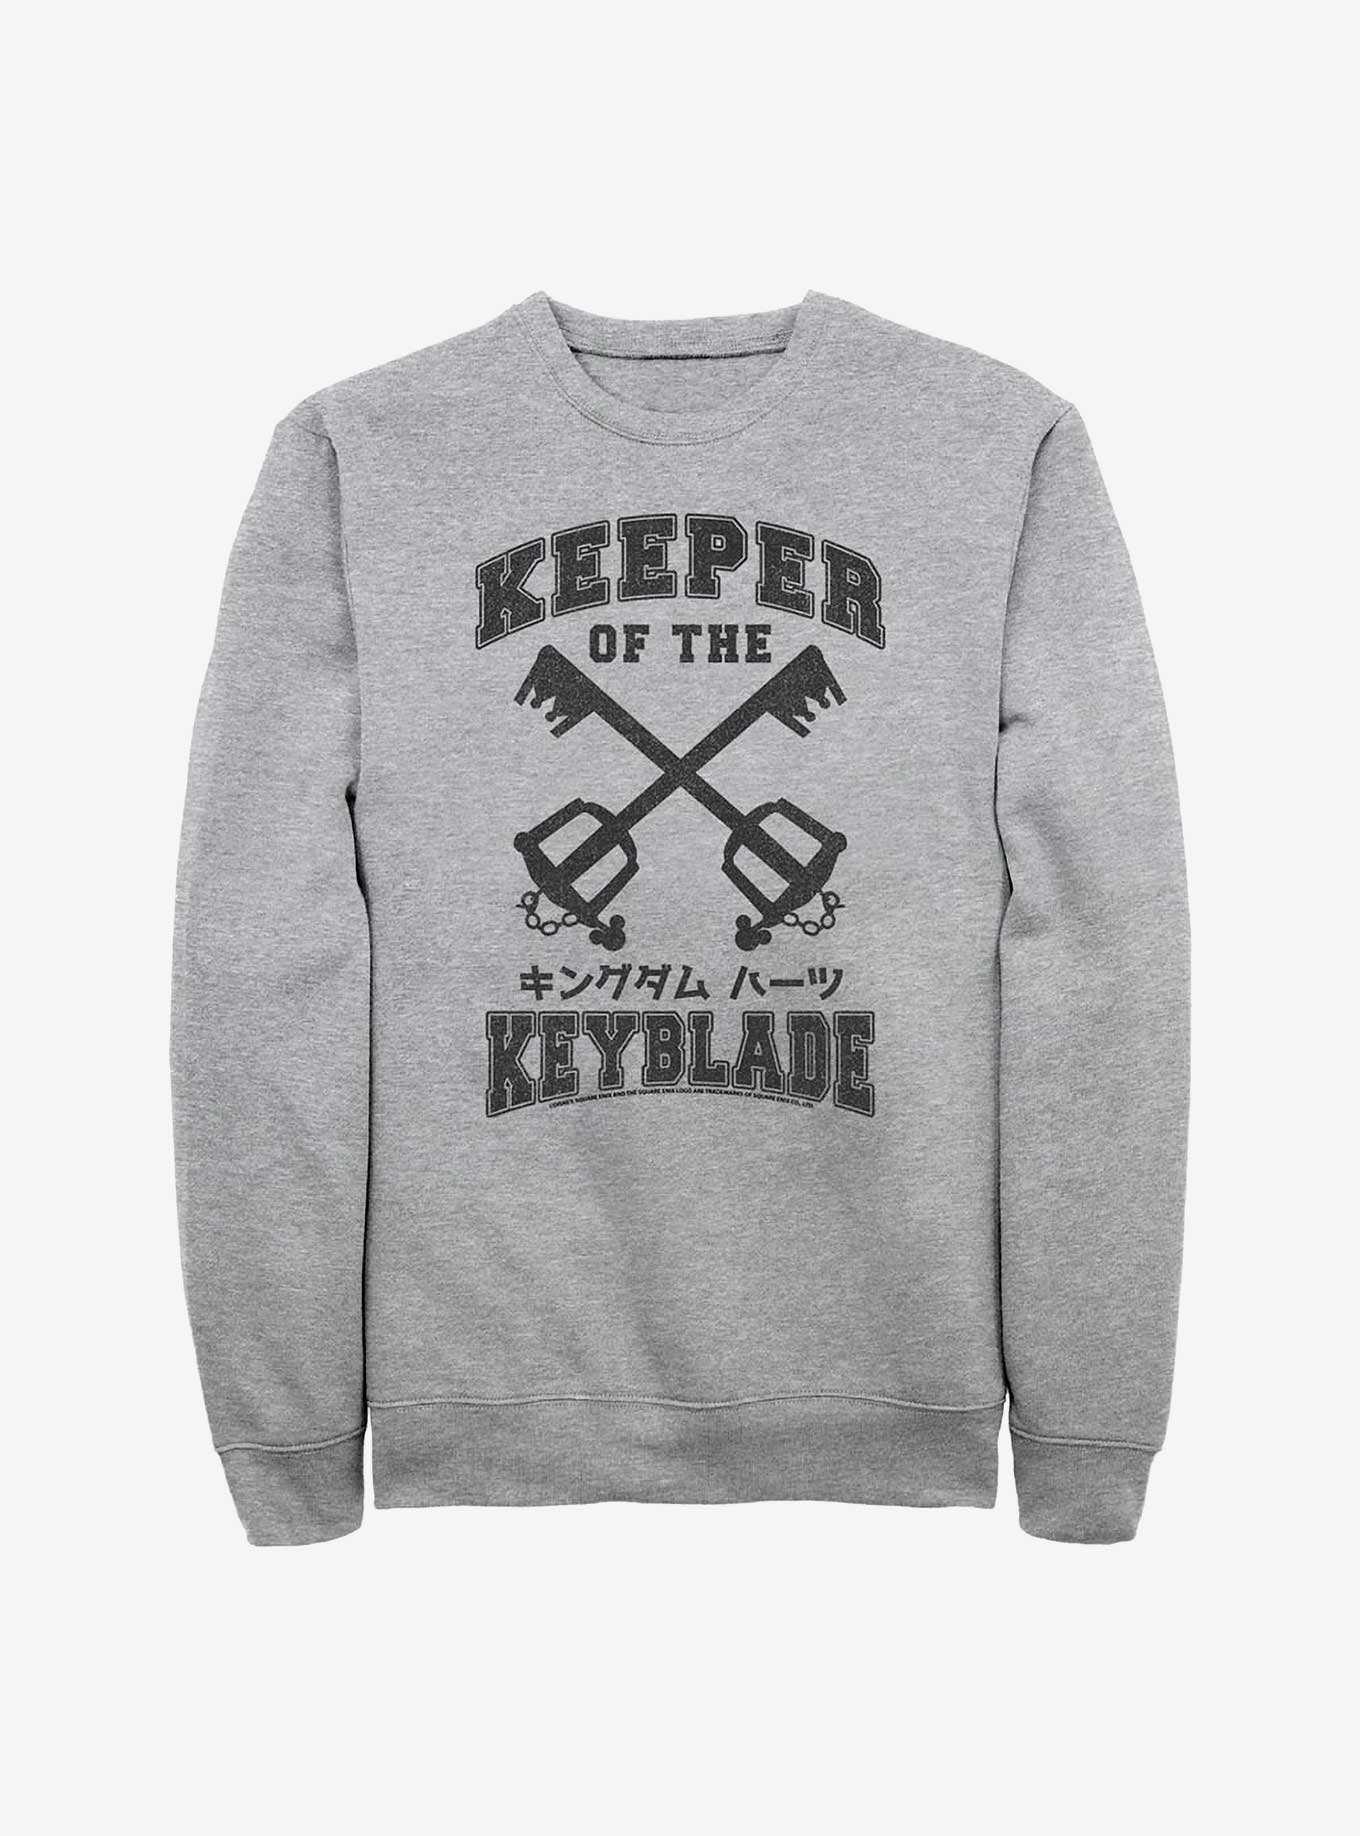 Disney Kingdom Hearts Keeper Of The Keyblade Sweatshirt, , hi-res